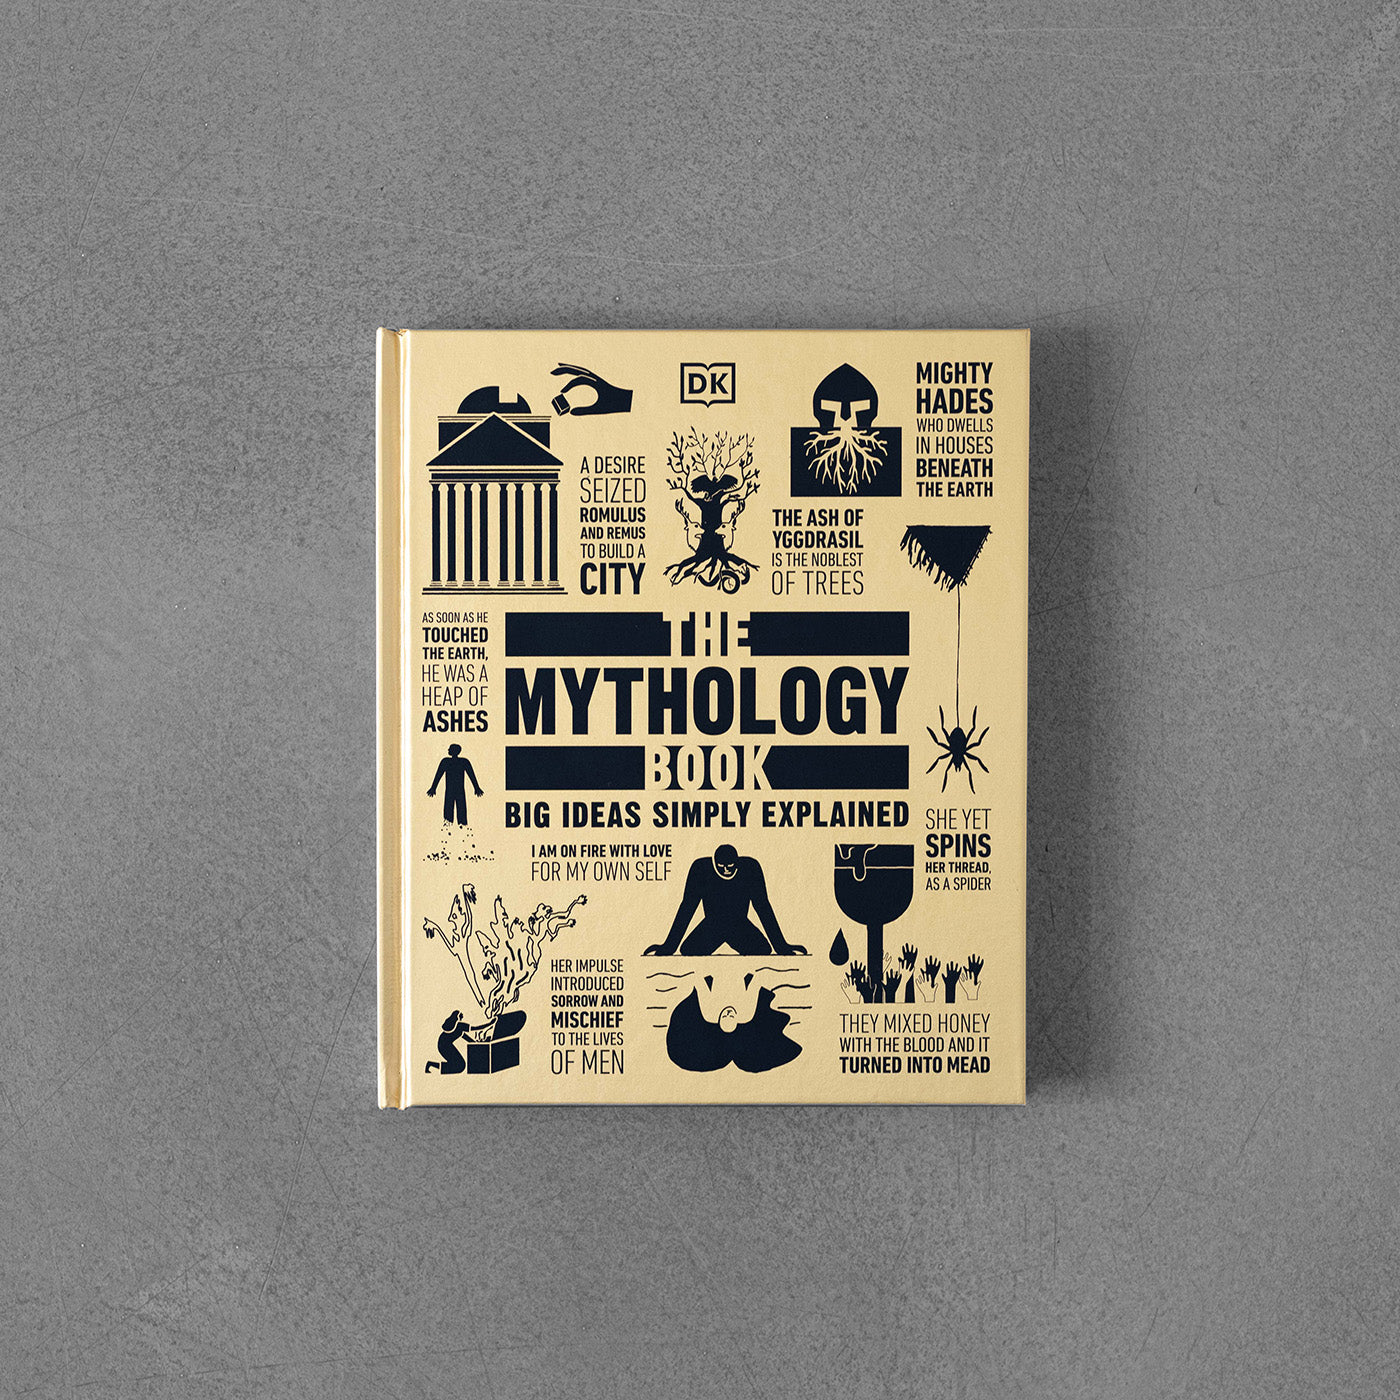 Książka mitologiczna: Po prostu wyjaśniono wielkie idee